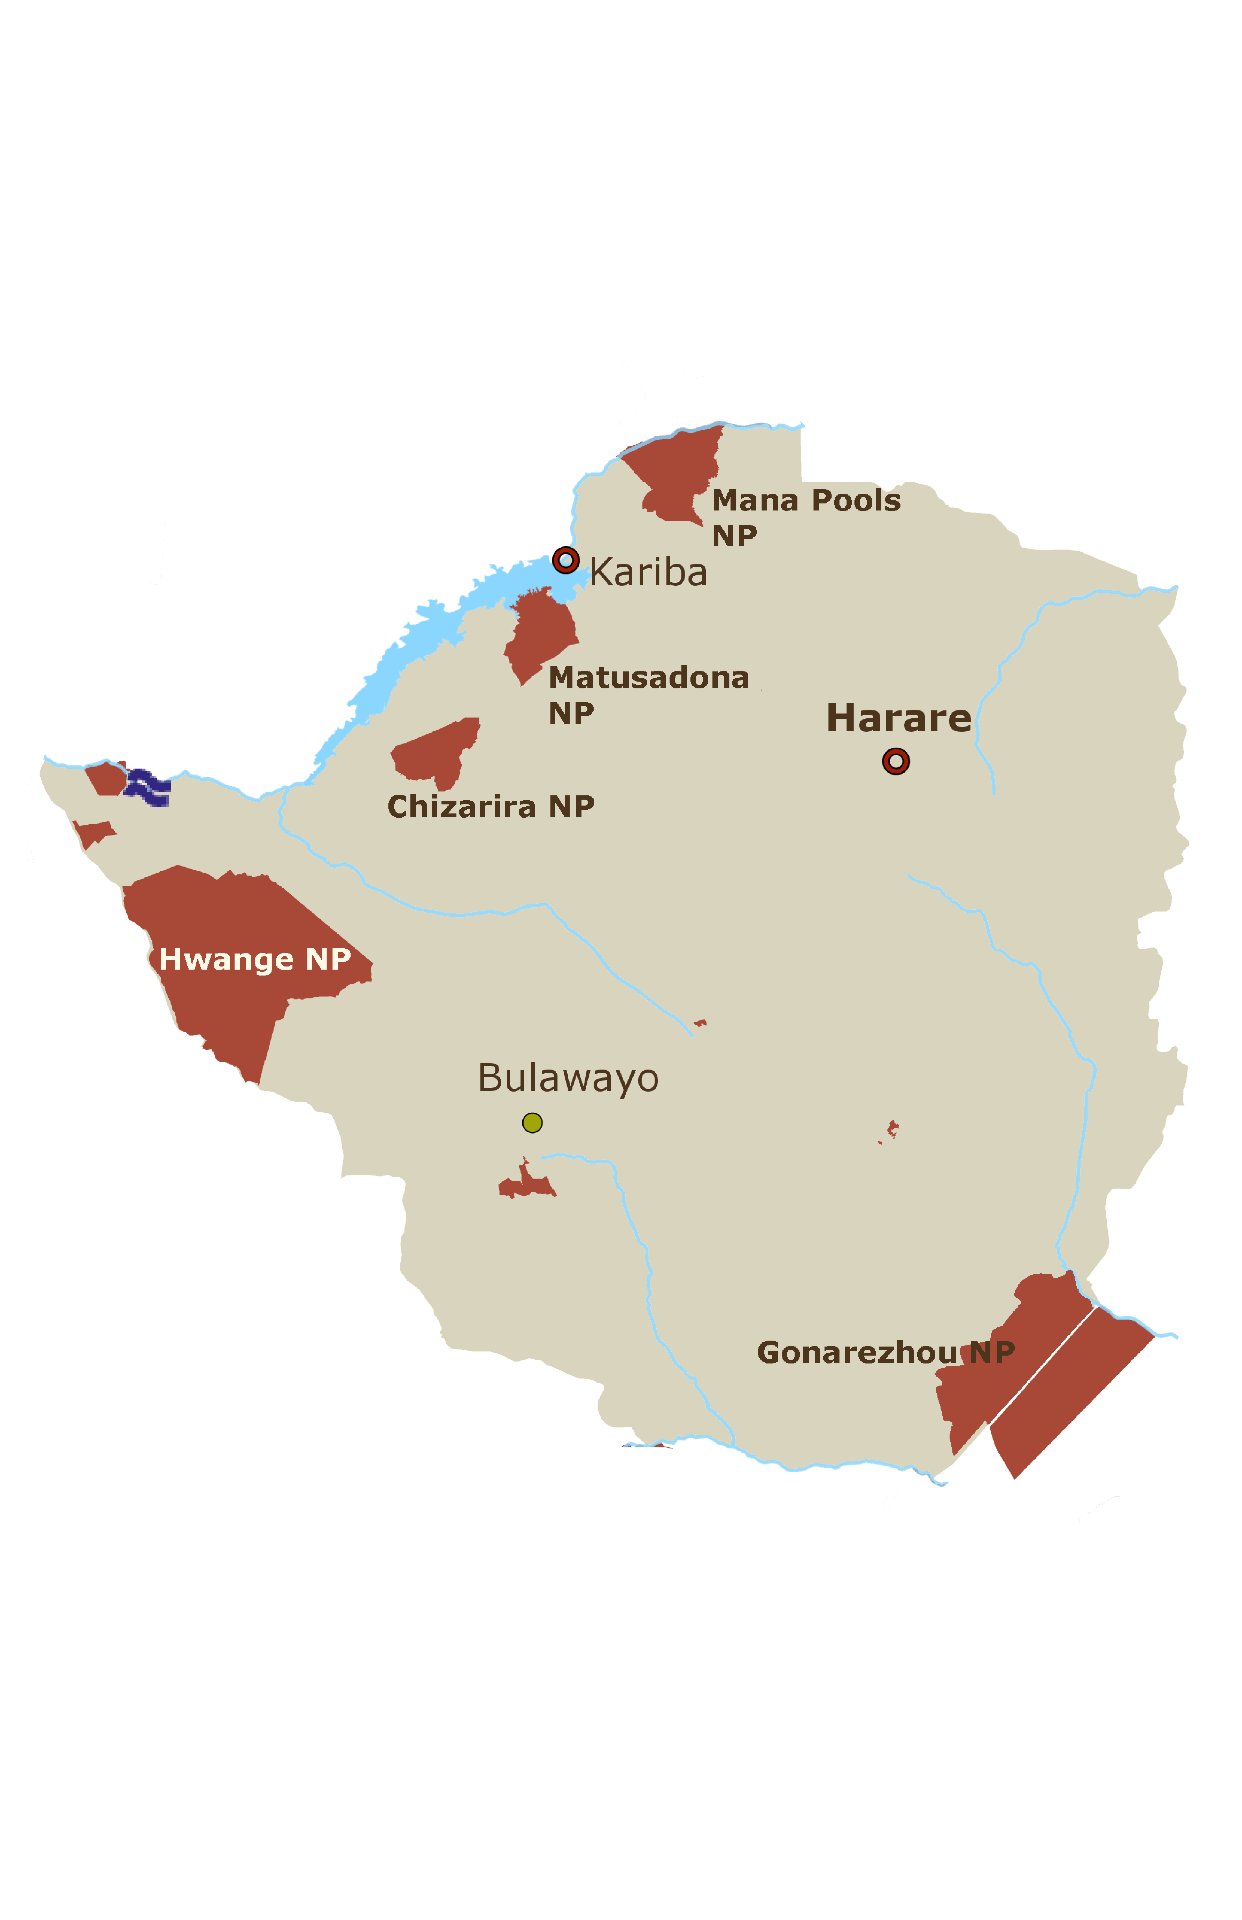 Simbabwe Karte